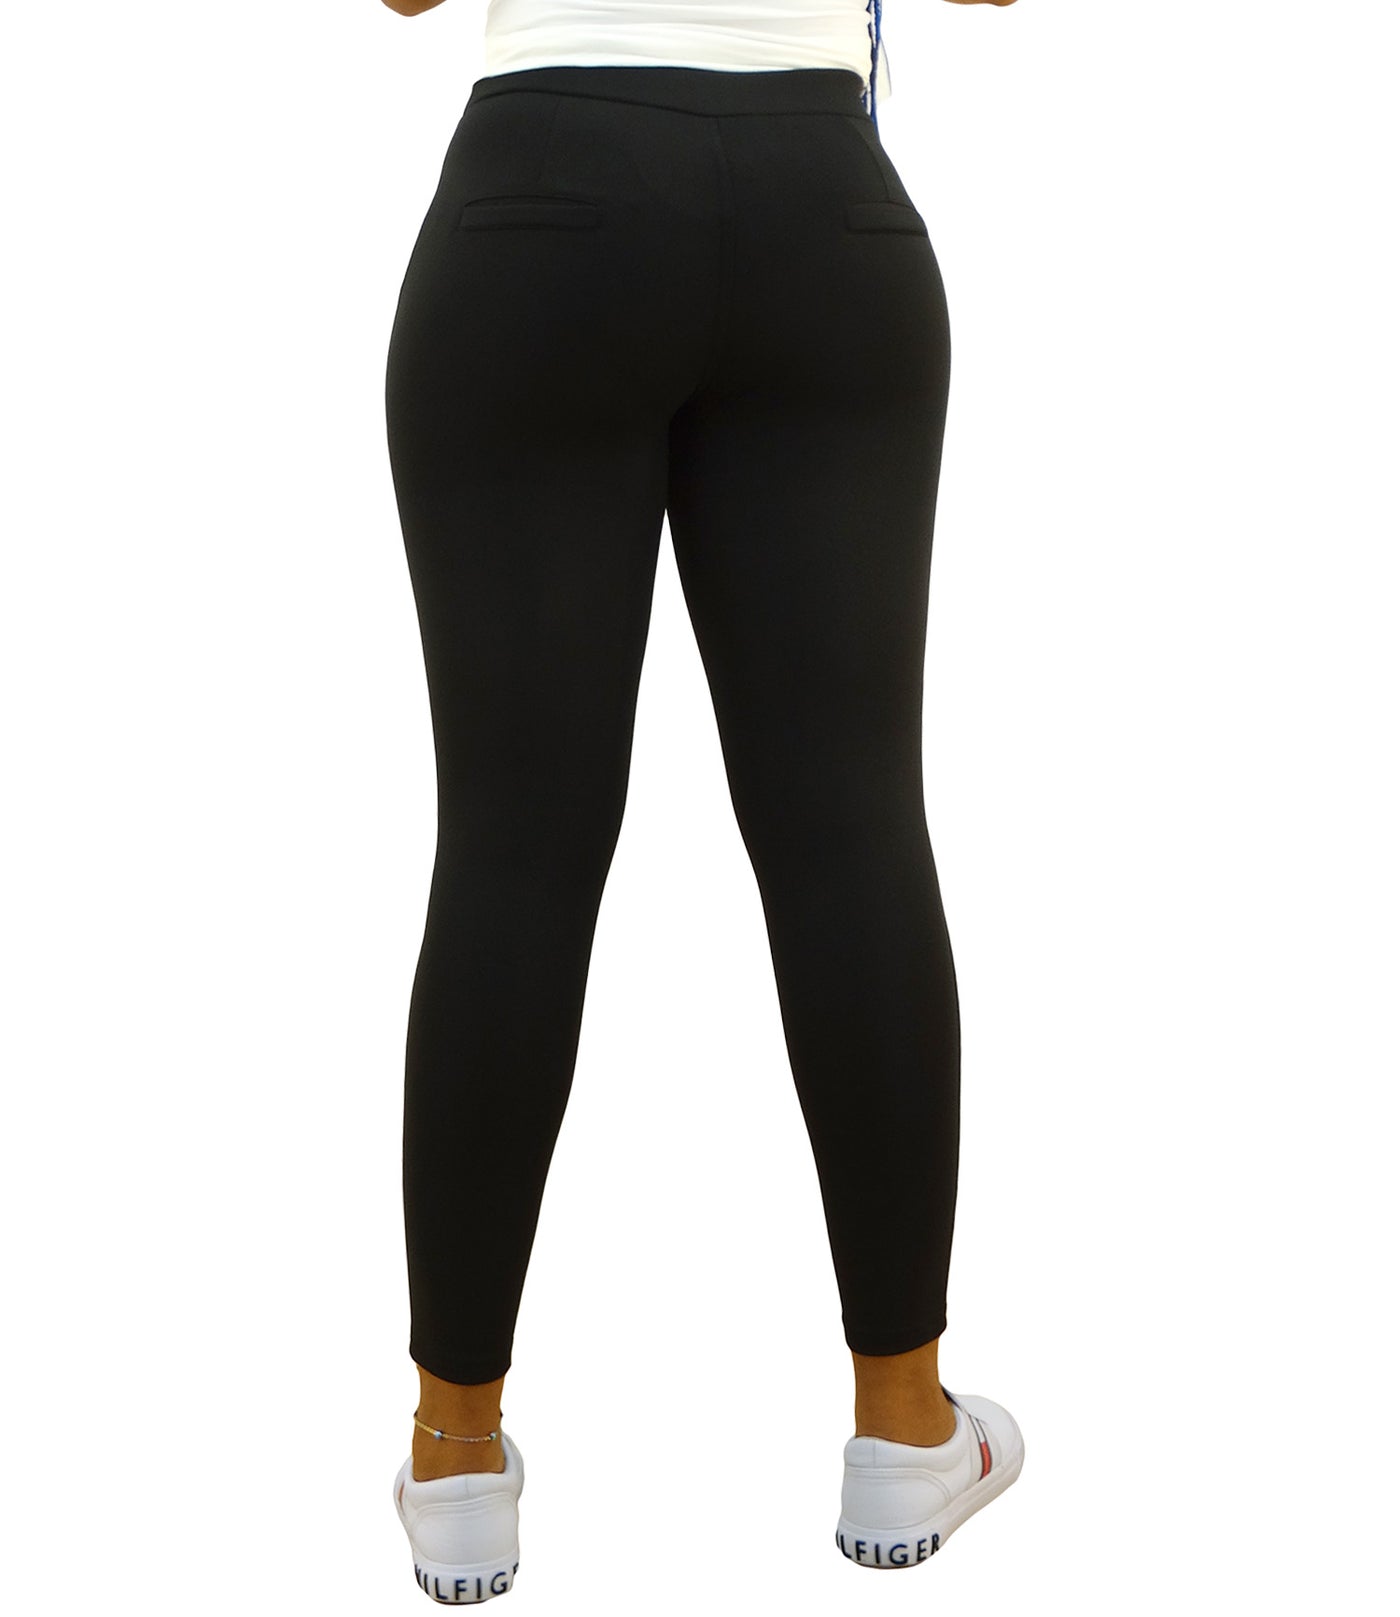 MAZE Collection Women's Leggings Pants Black Checks Size M